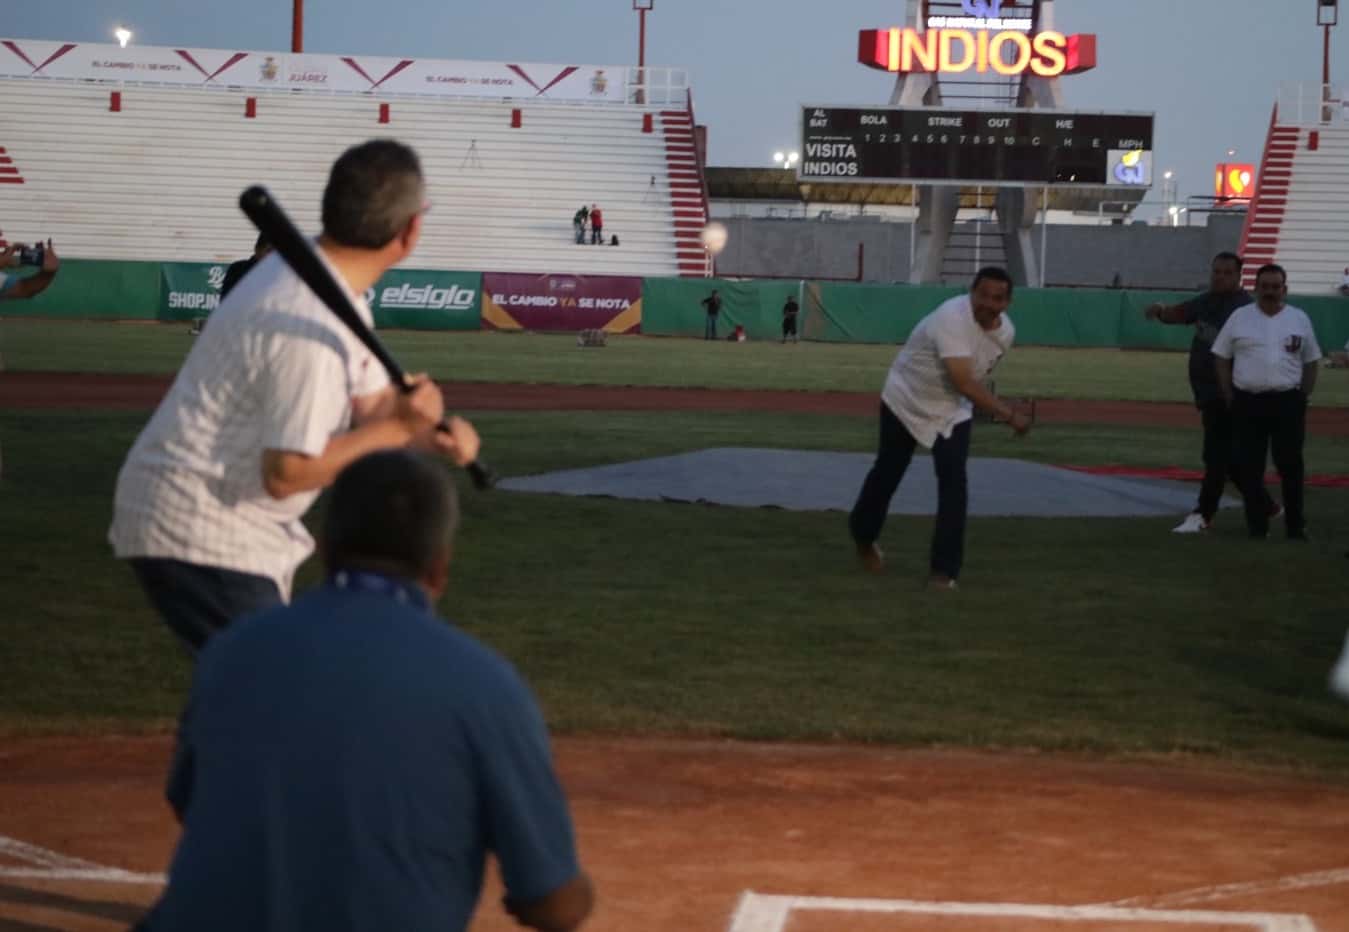 Alcalde Cruz Pérez Cuéllar lanza la primera pelota durante el juego entre Indios y Mineros